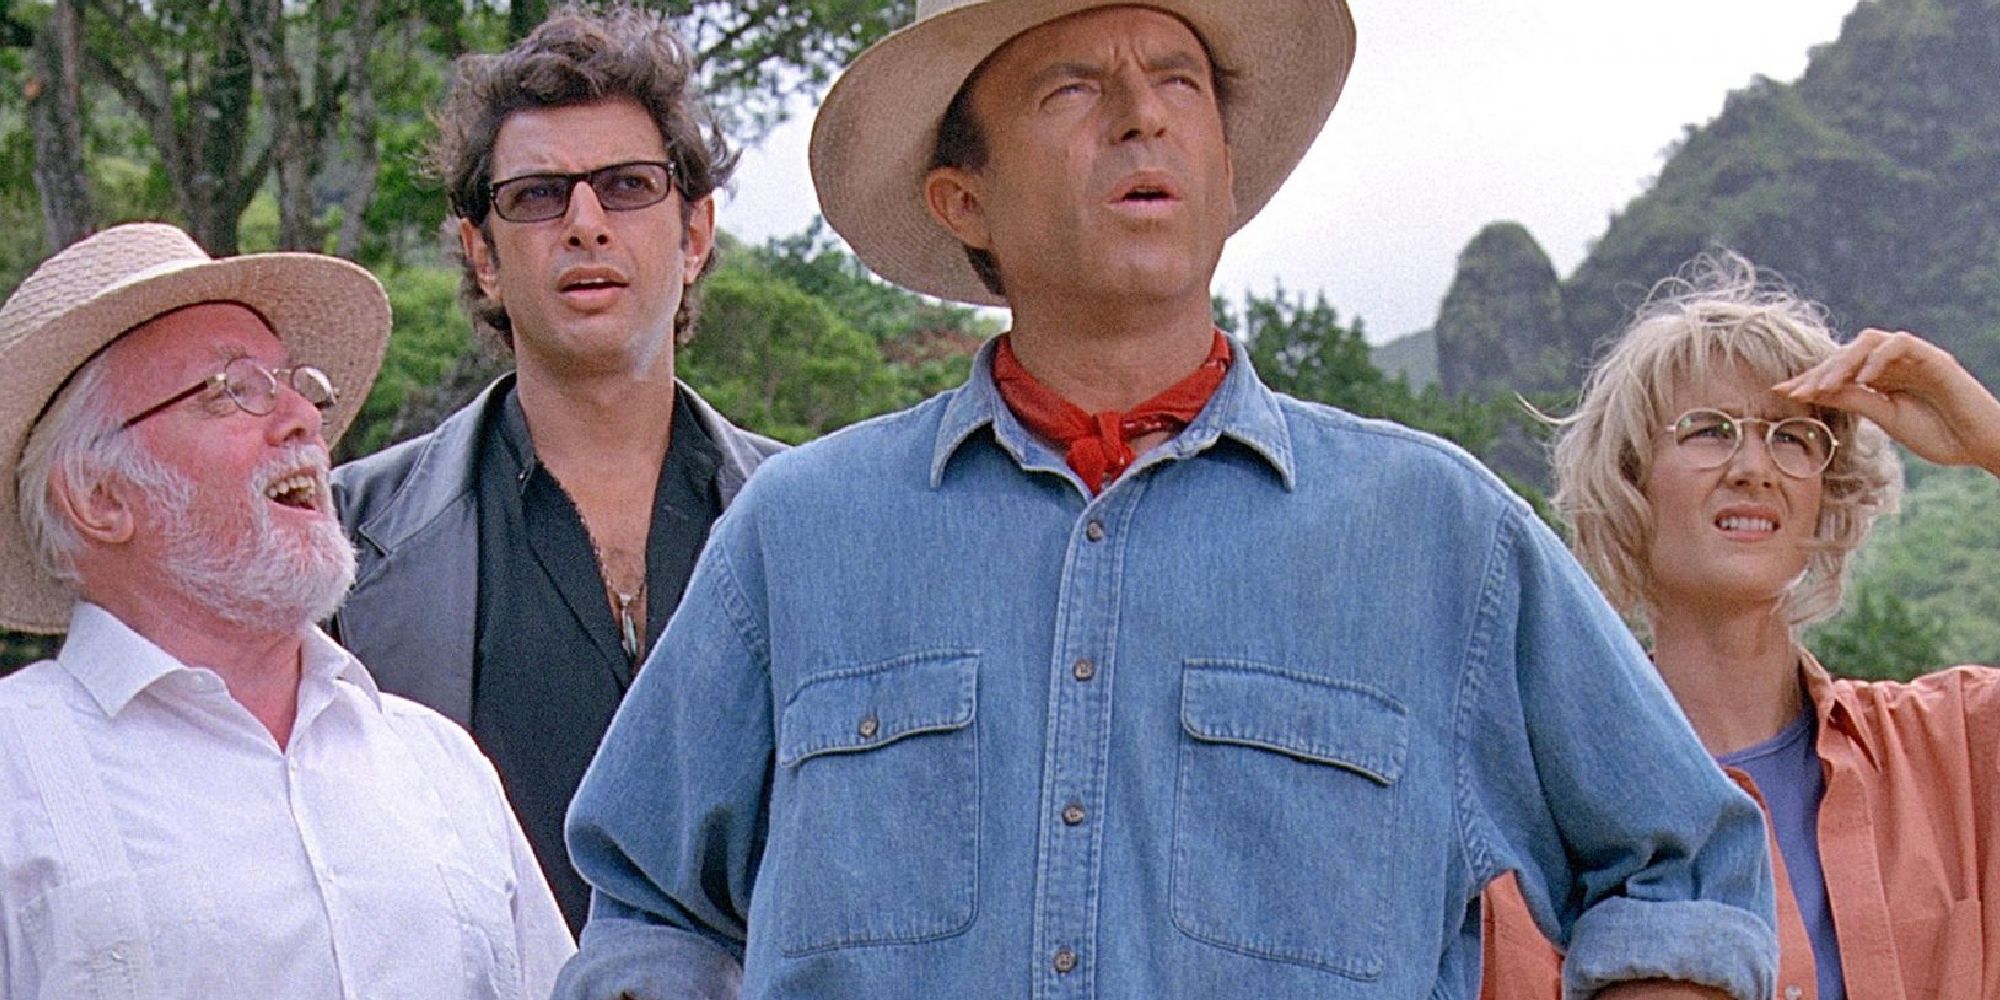 Sam Neill, Laura Dern, Jeff Goldblum, and Richard Attenborough observing Jurassic Park